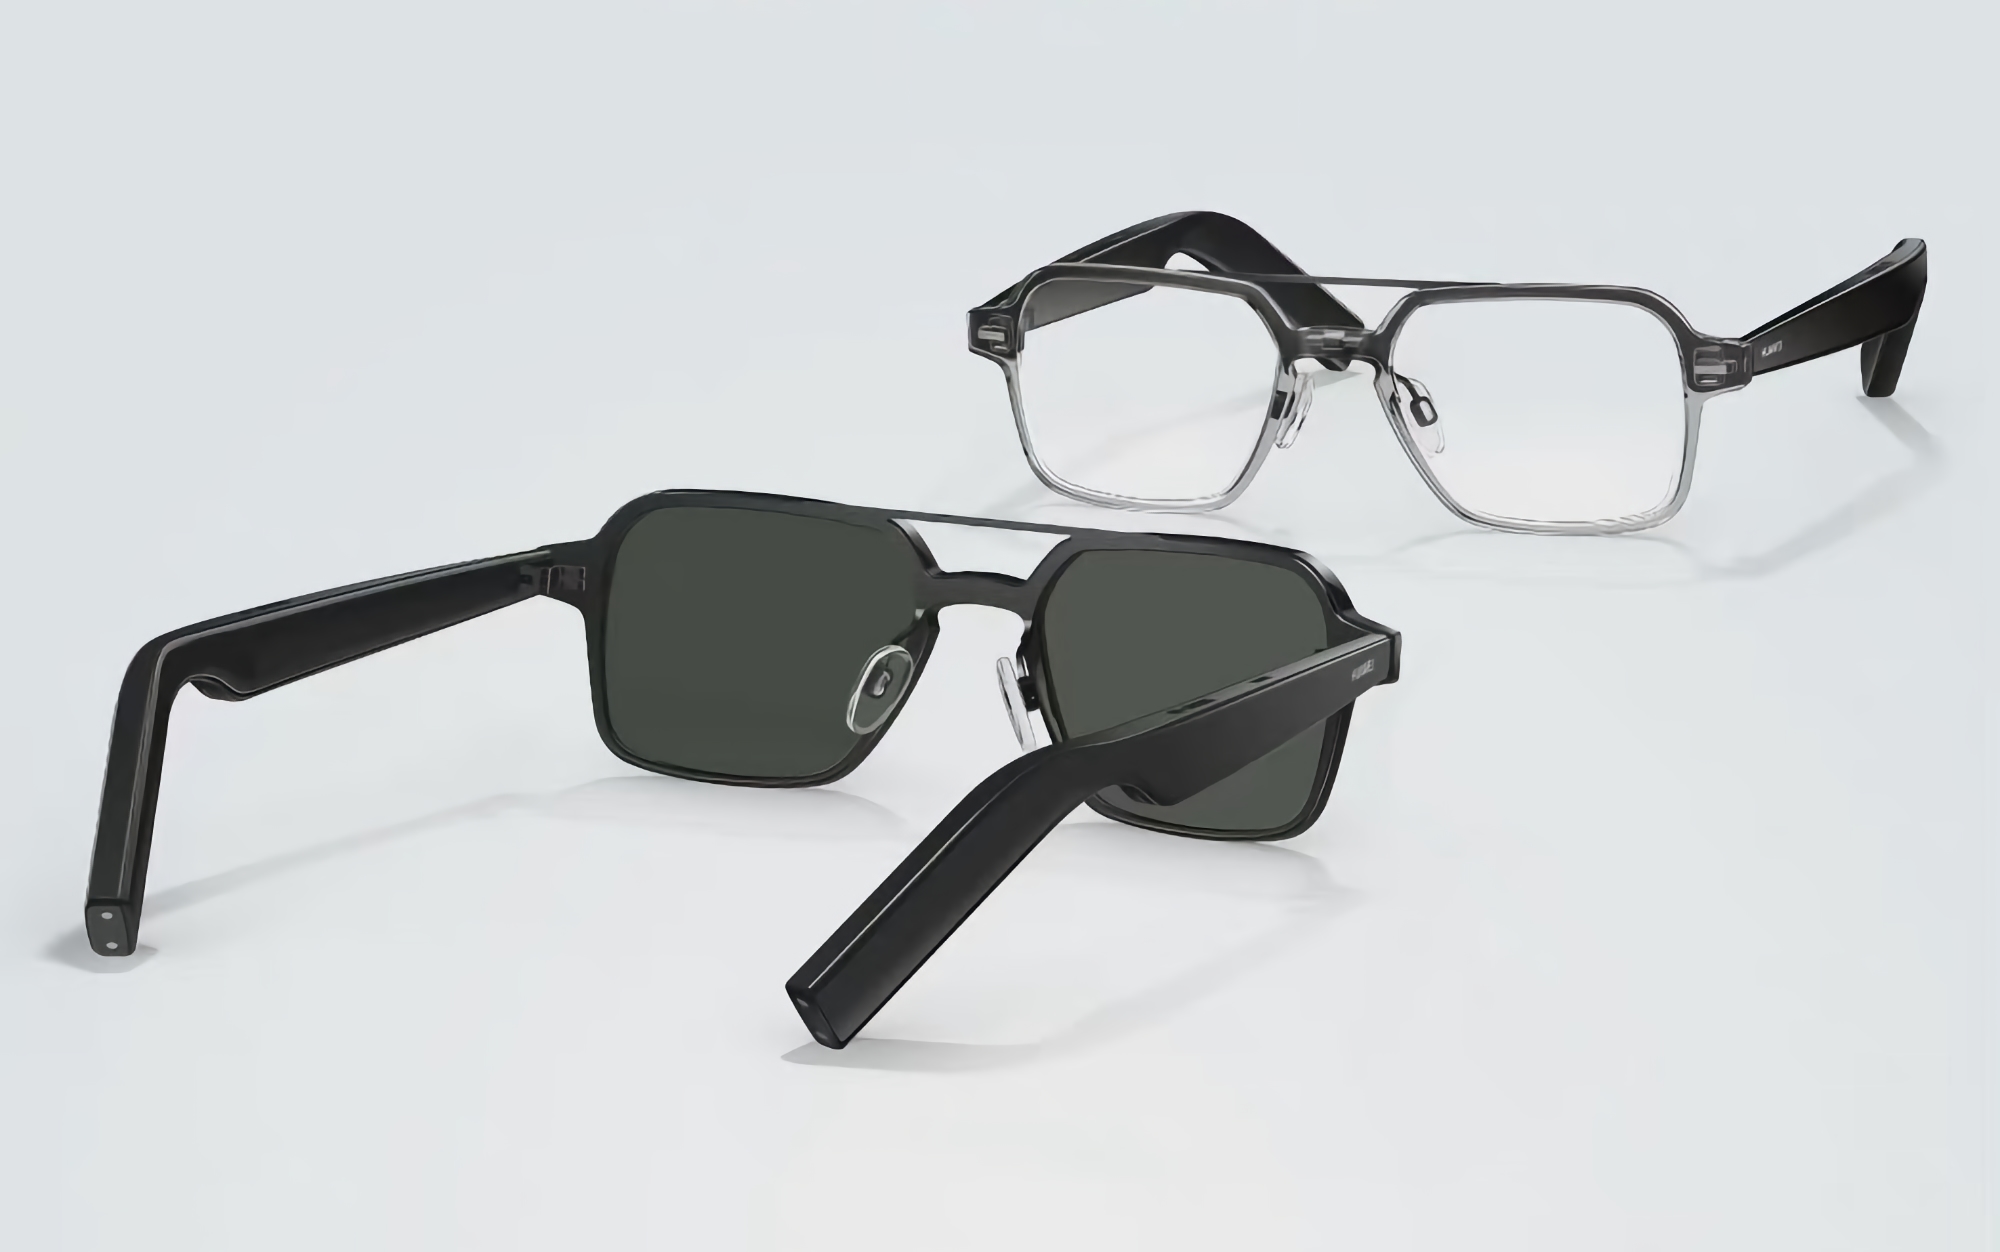 Offiziell: Huawei präsentiert zusammen mit der P50 Pocket Clamshell die Eyewear 3 Smart Glasses